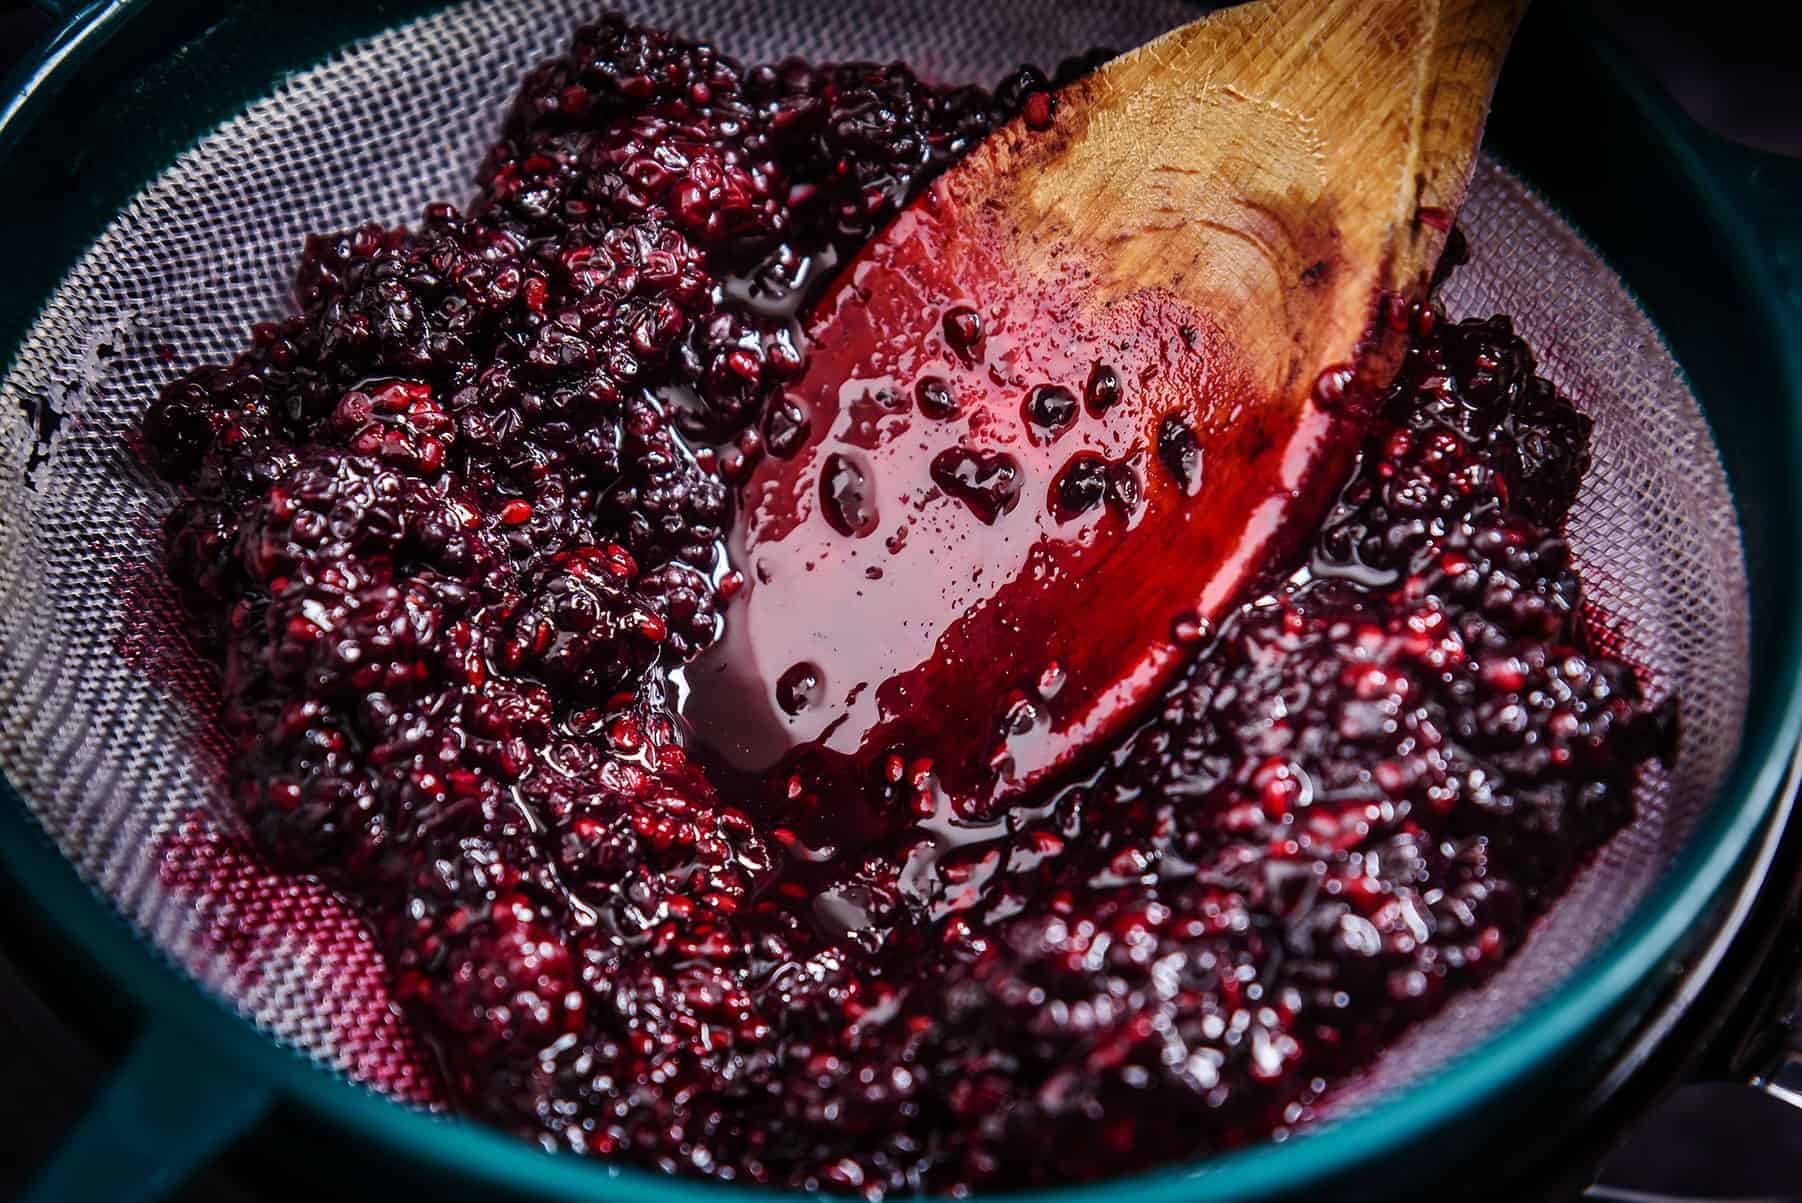 Sieving the Blackberries for Vegan Blackberry Coulis